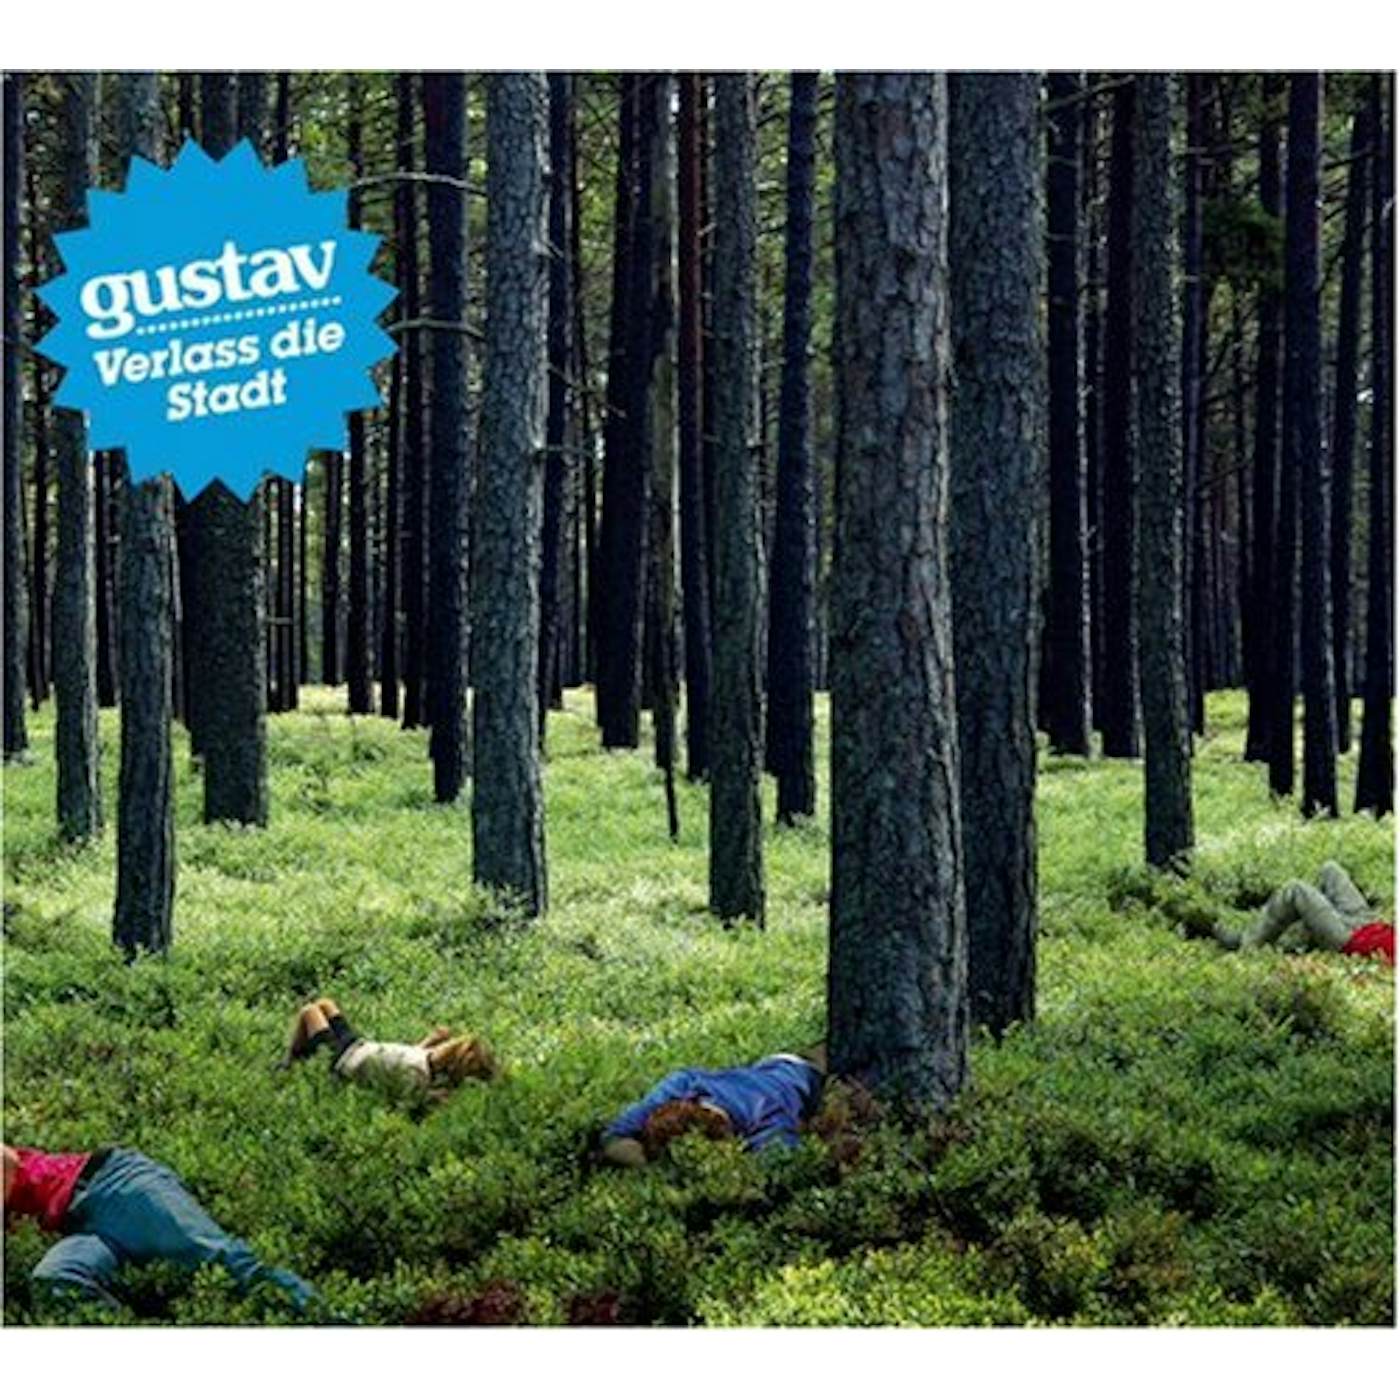 Gustav VERLASS DIE STADT CD